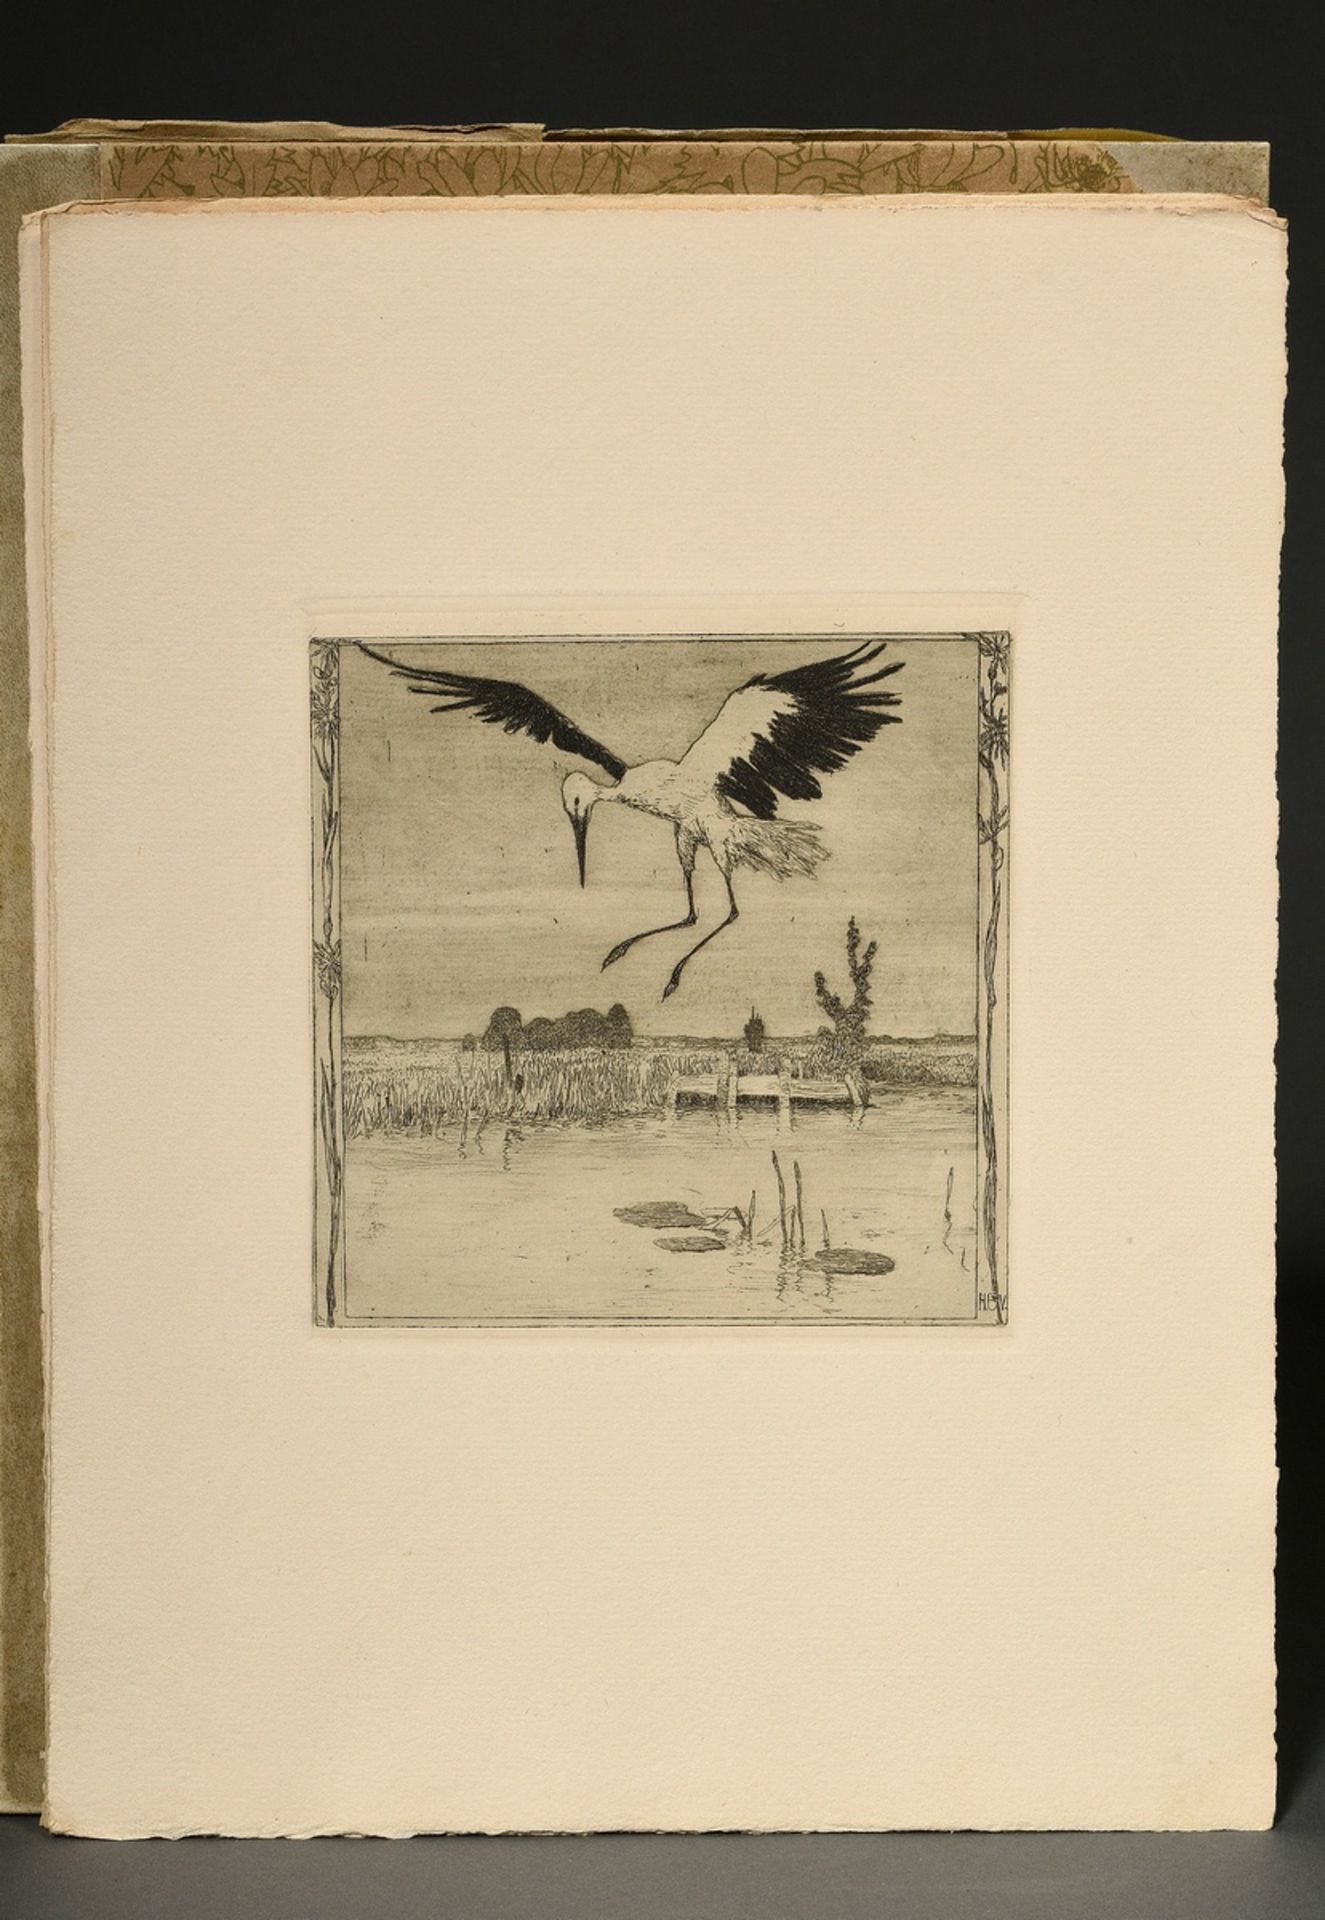 Vogeler, Heinrich (1872-1942) "An den Frühling" 1899/1901, portfolio with 10 etchings and prelimina - Image 16 of 25